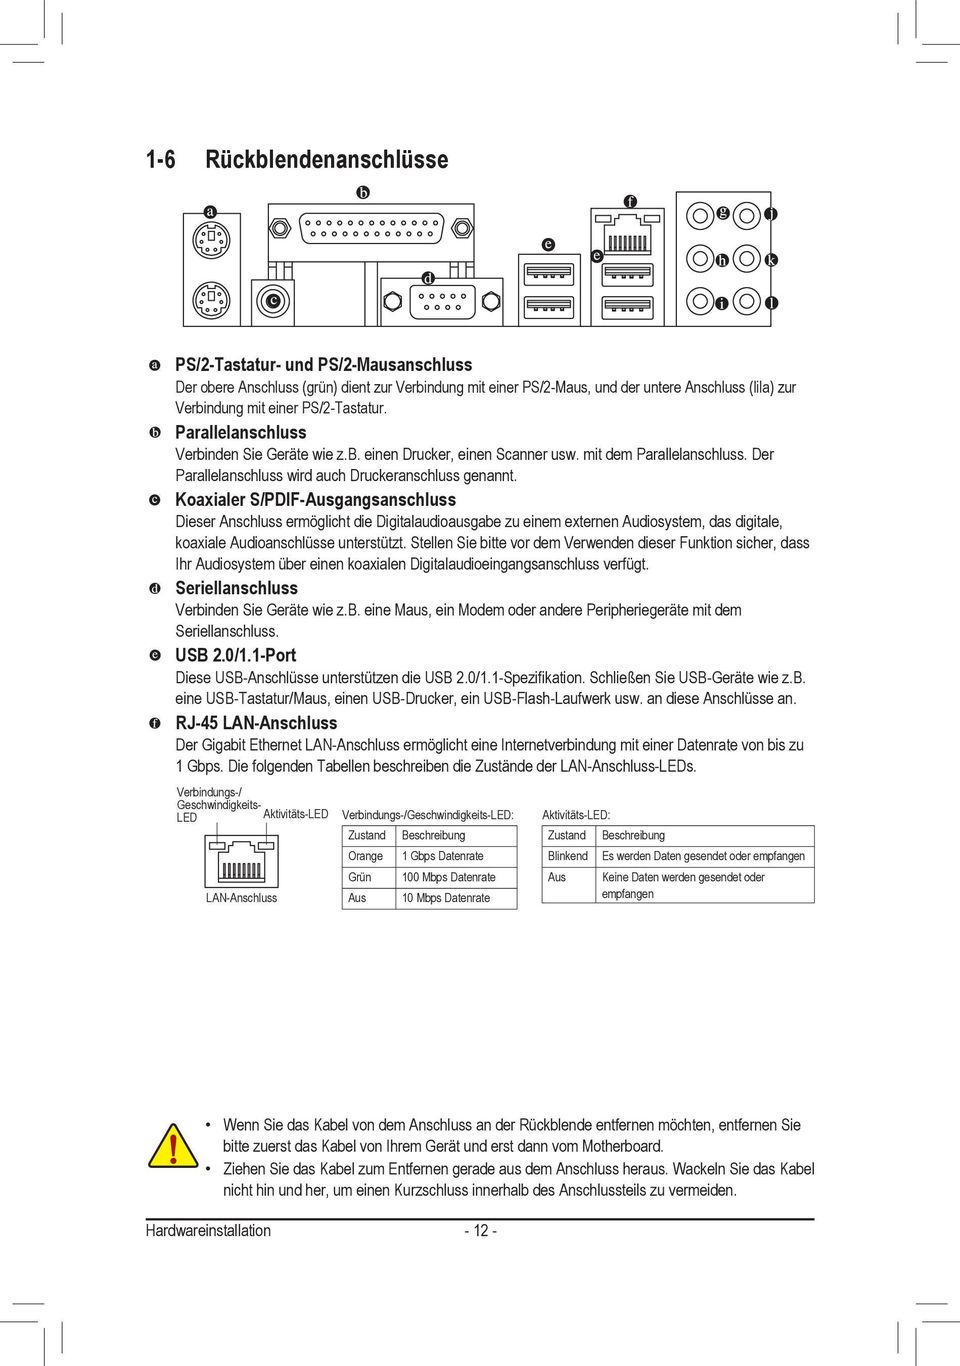 Koaxialer S/PDIF-Ausgangsanschluss Dieser Anschluss ermöglicht die Digitalaudioausgabe zu einem externen Audiosystem, das digitale, koaxiale Audioanschlüsse unterstützt.